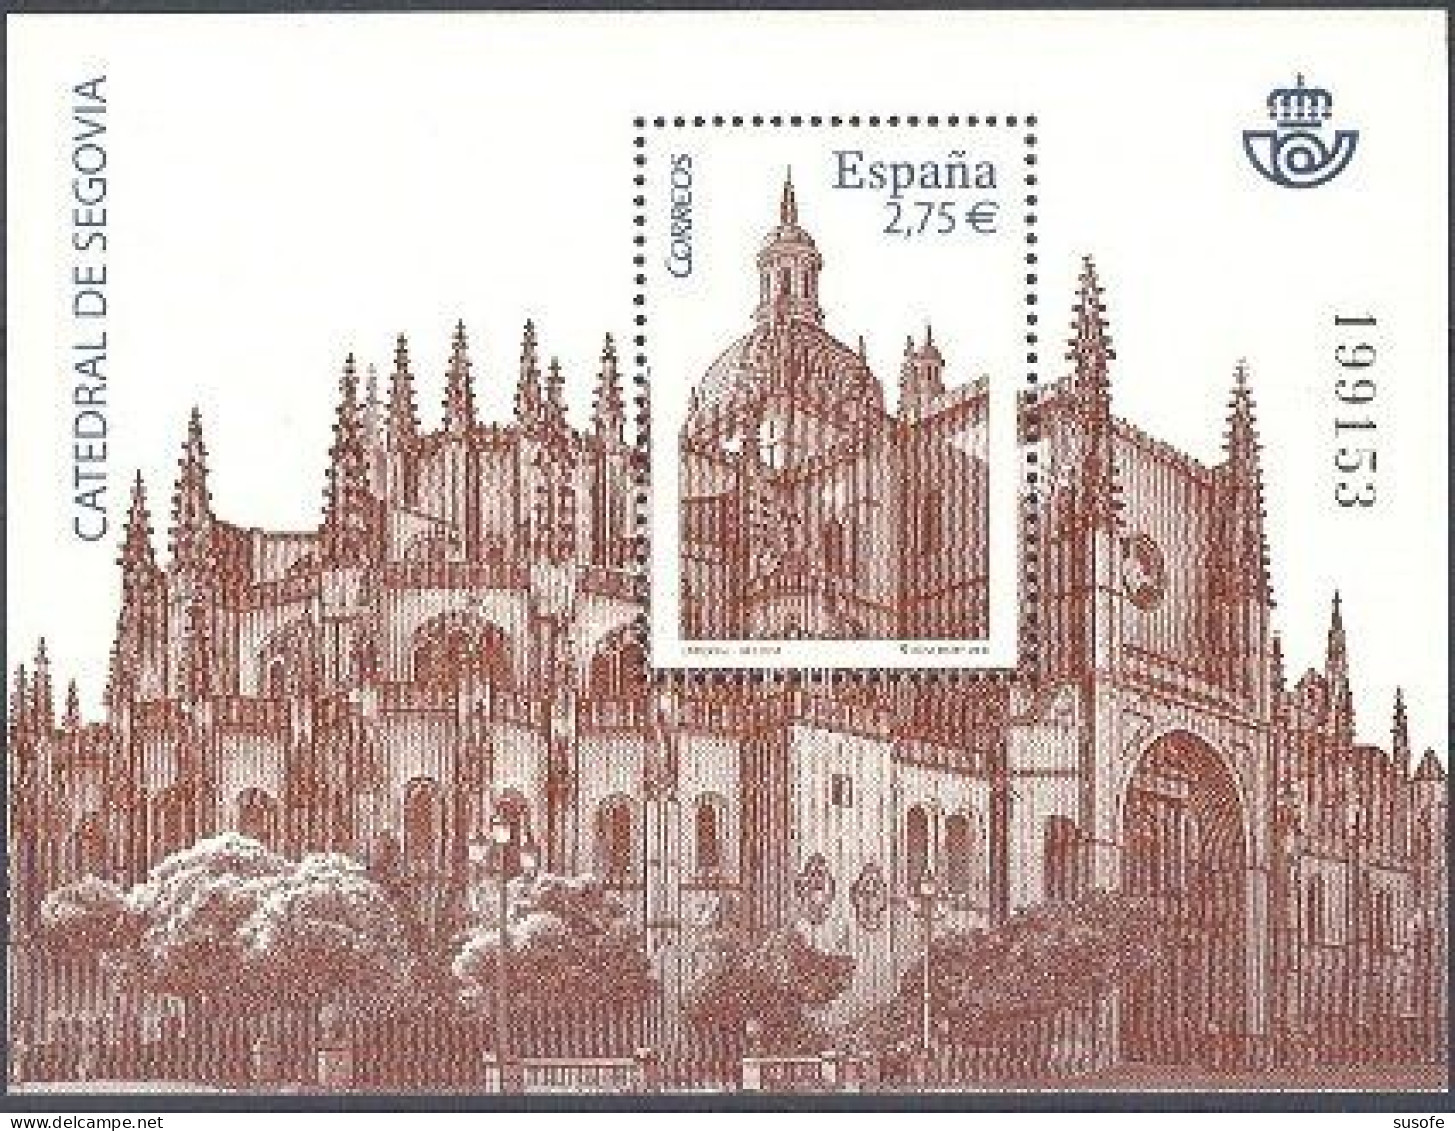 España 2010 Edifil 4580 Sello ** HB Catedral De Segovia Michel BL196 Yvert BF188 Spain Stamp Timbre Espagne Briefmarke - Neufs